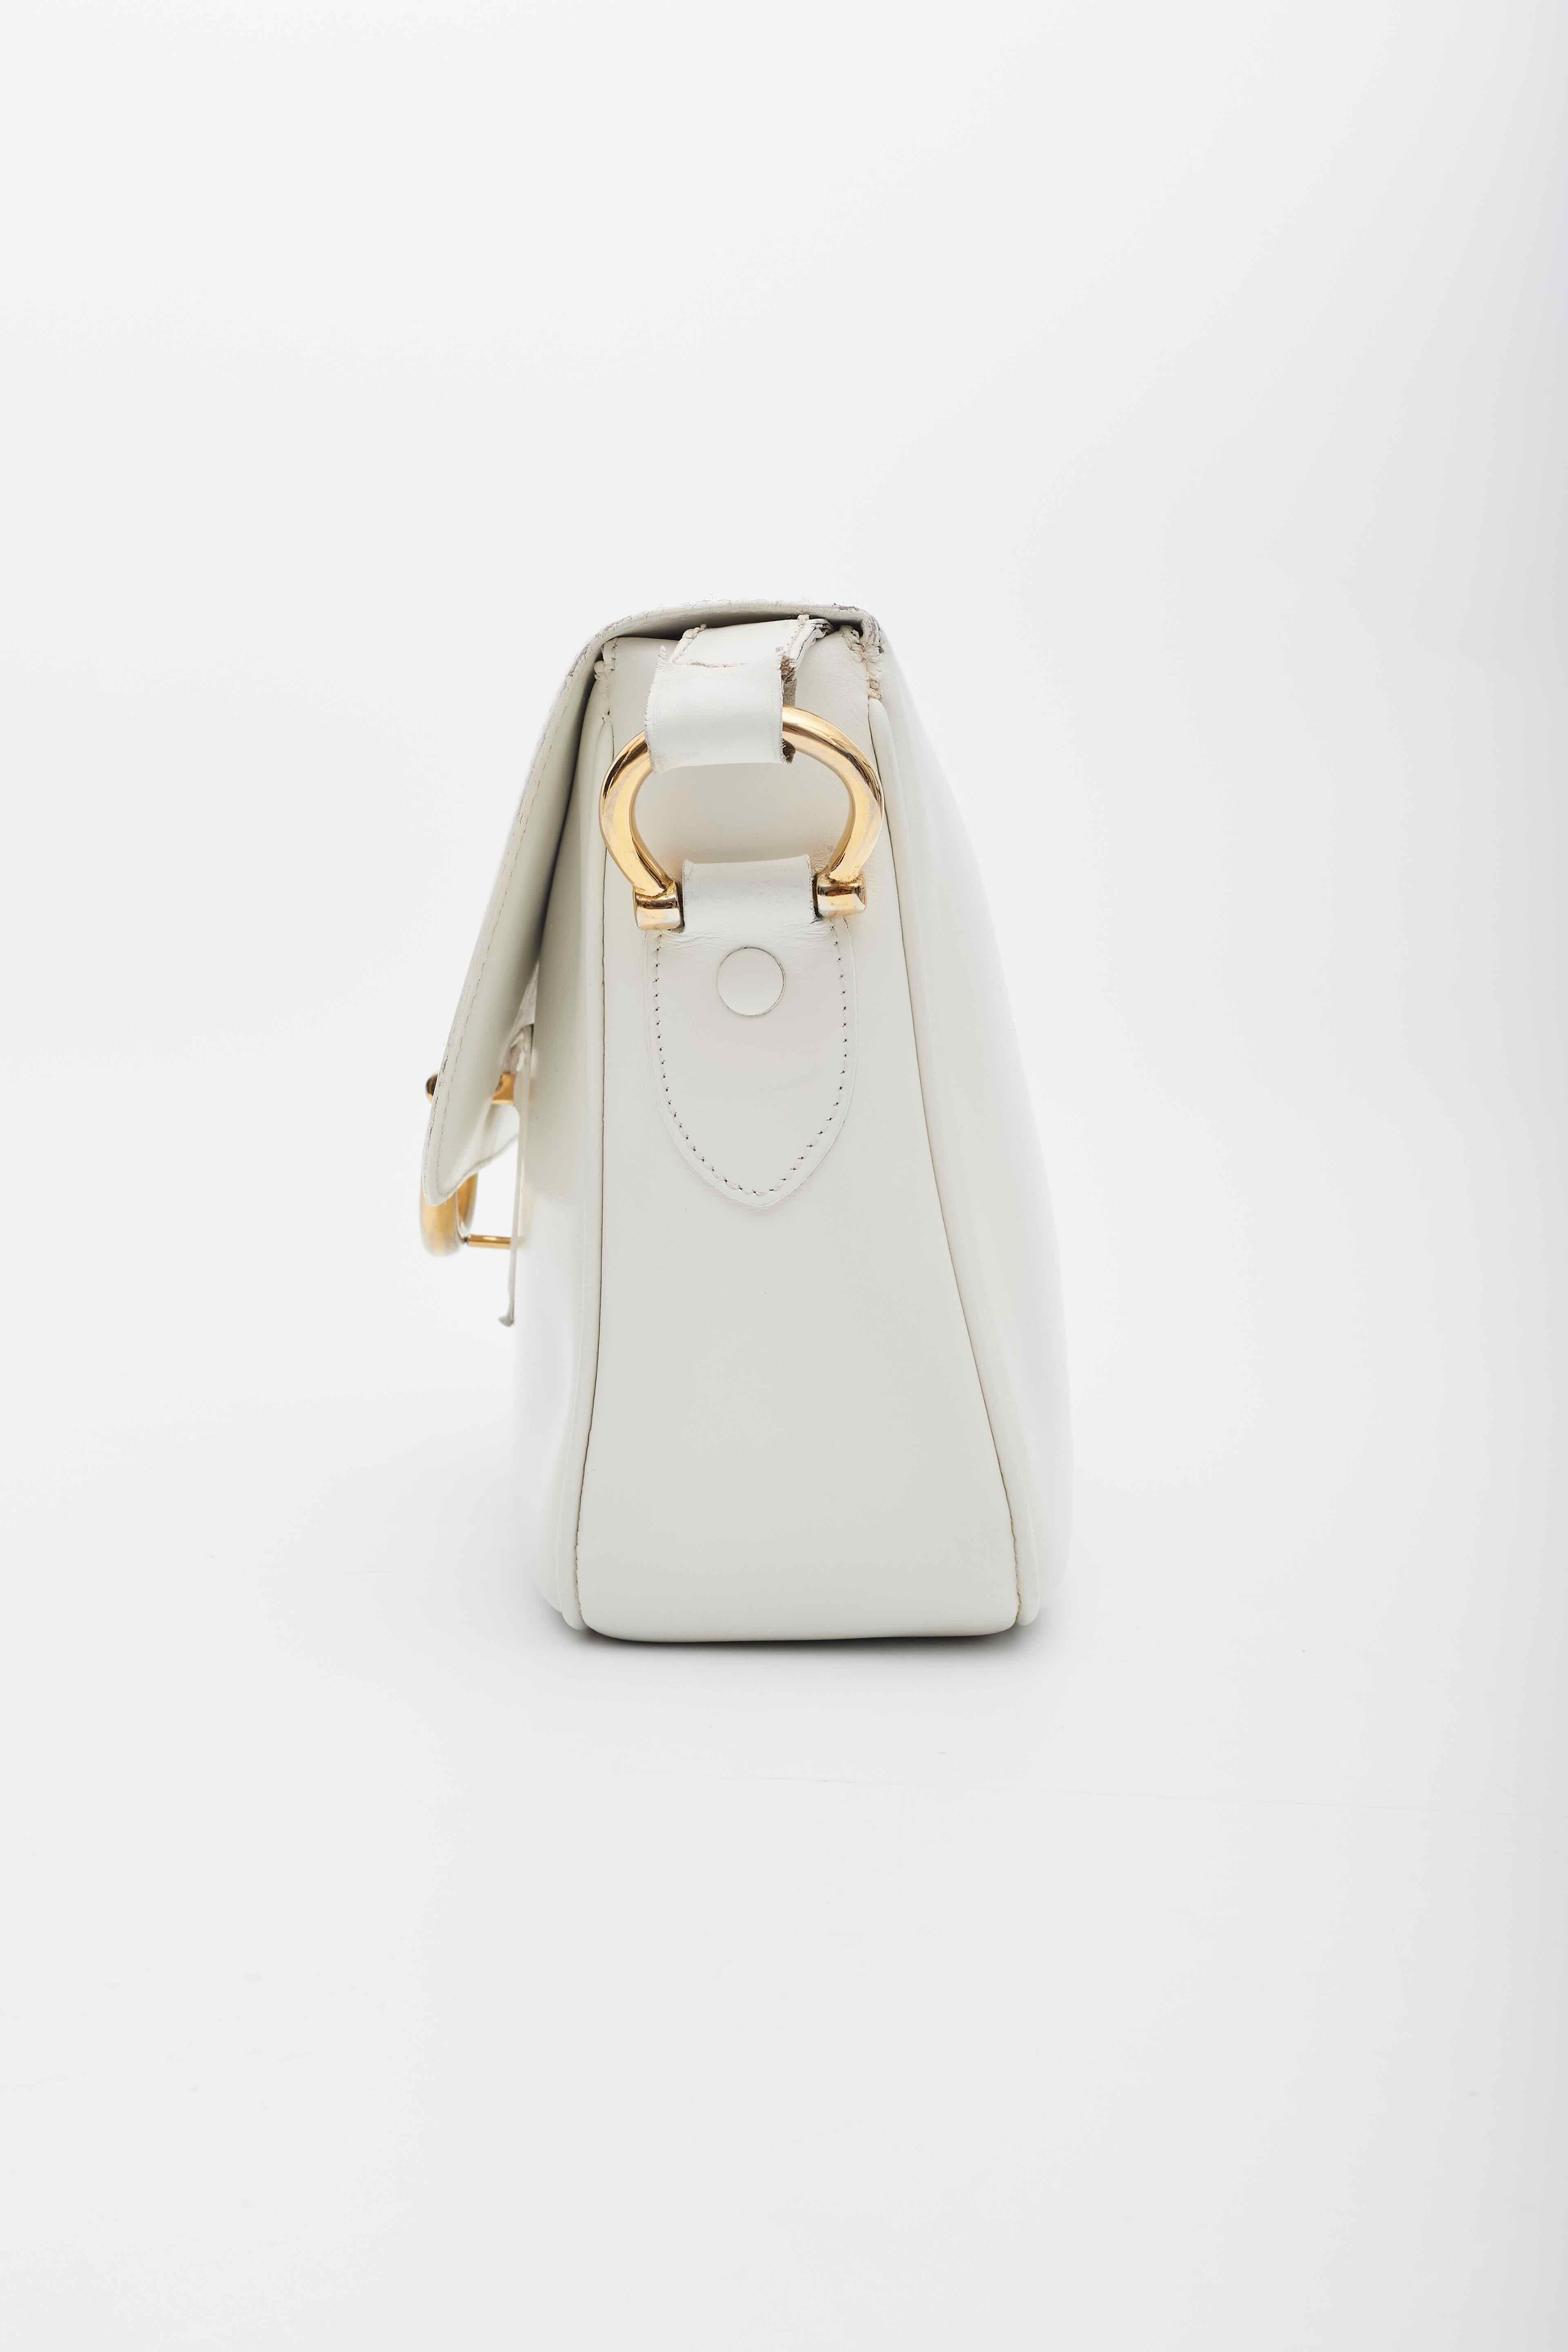 Celine Vintage White Leather Shoulder Bag For Sale 1